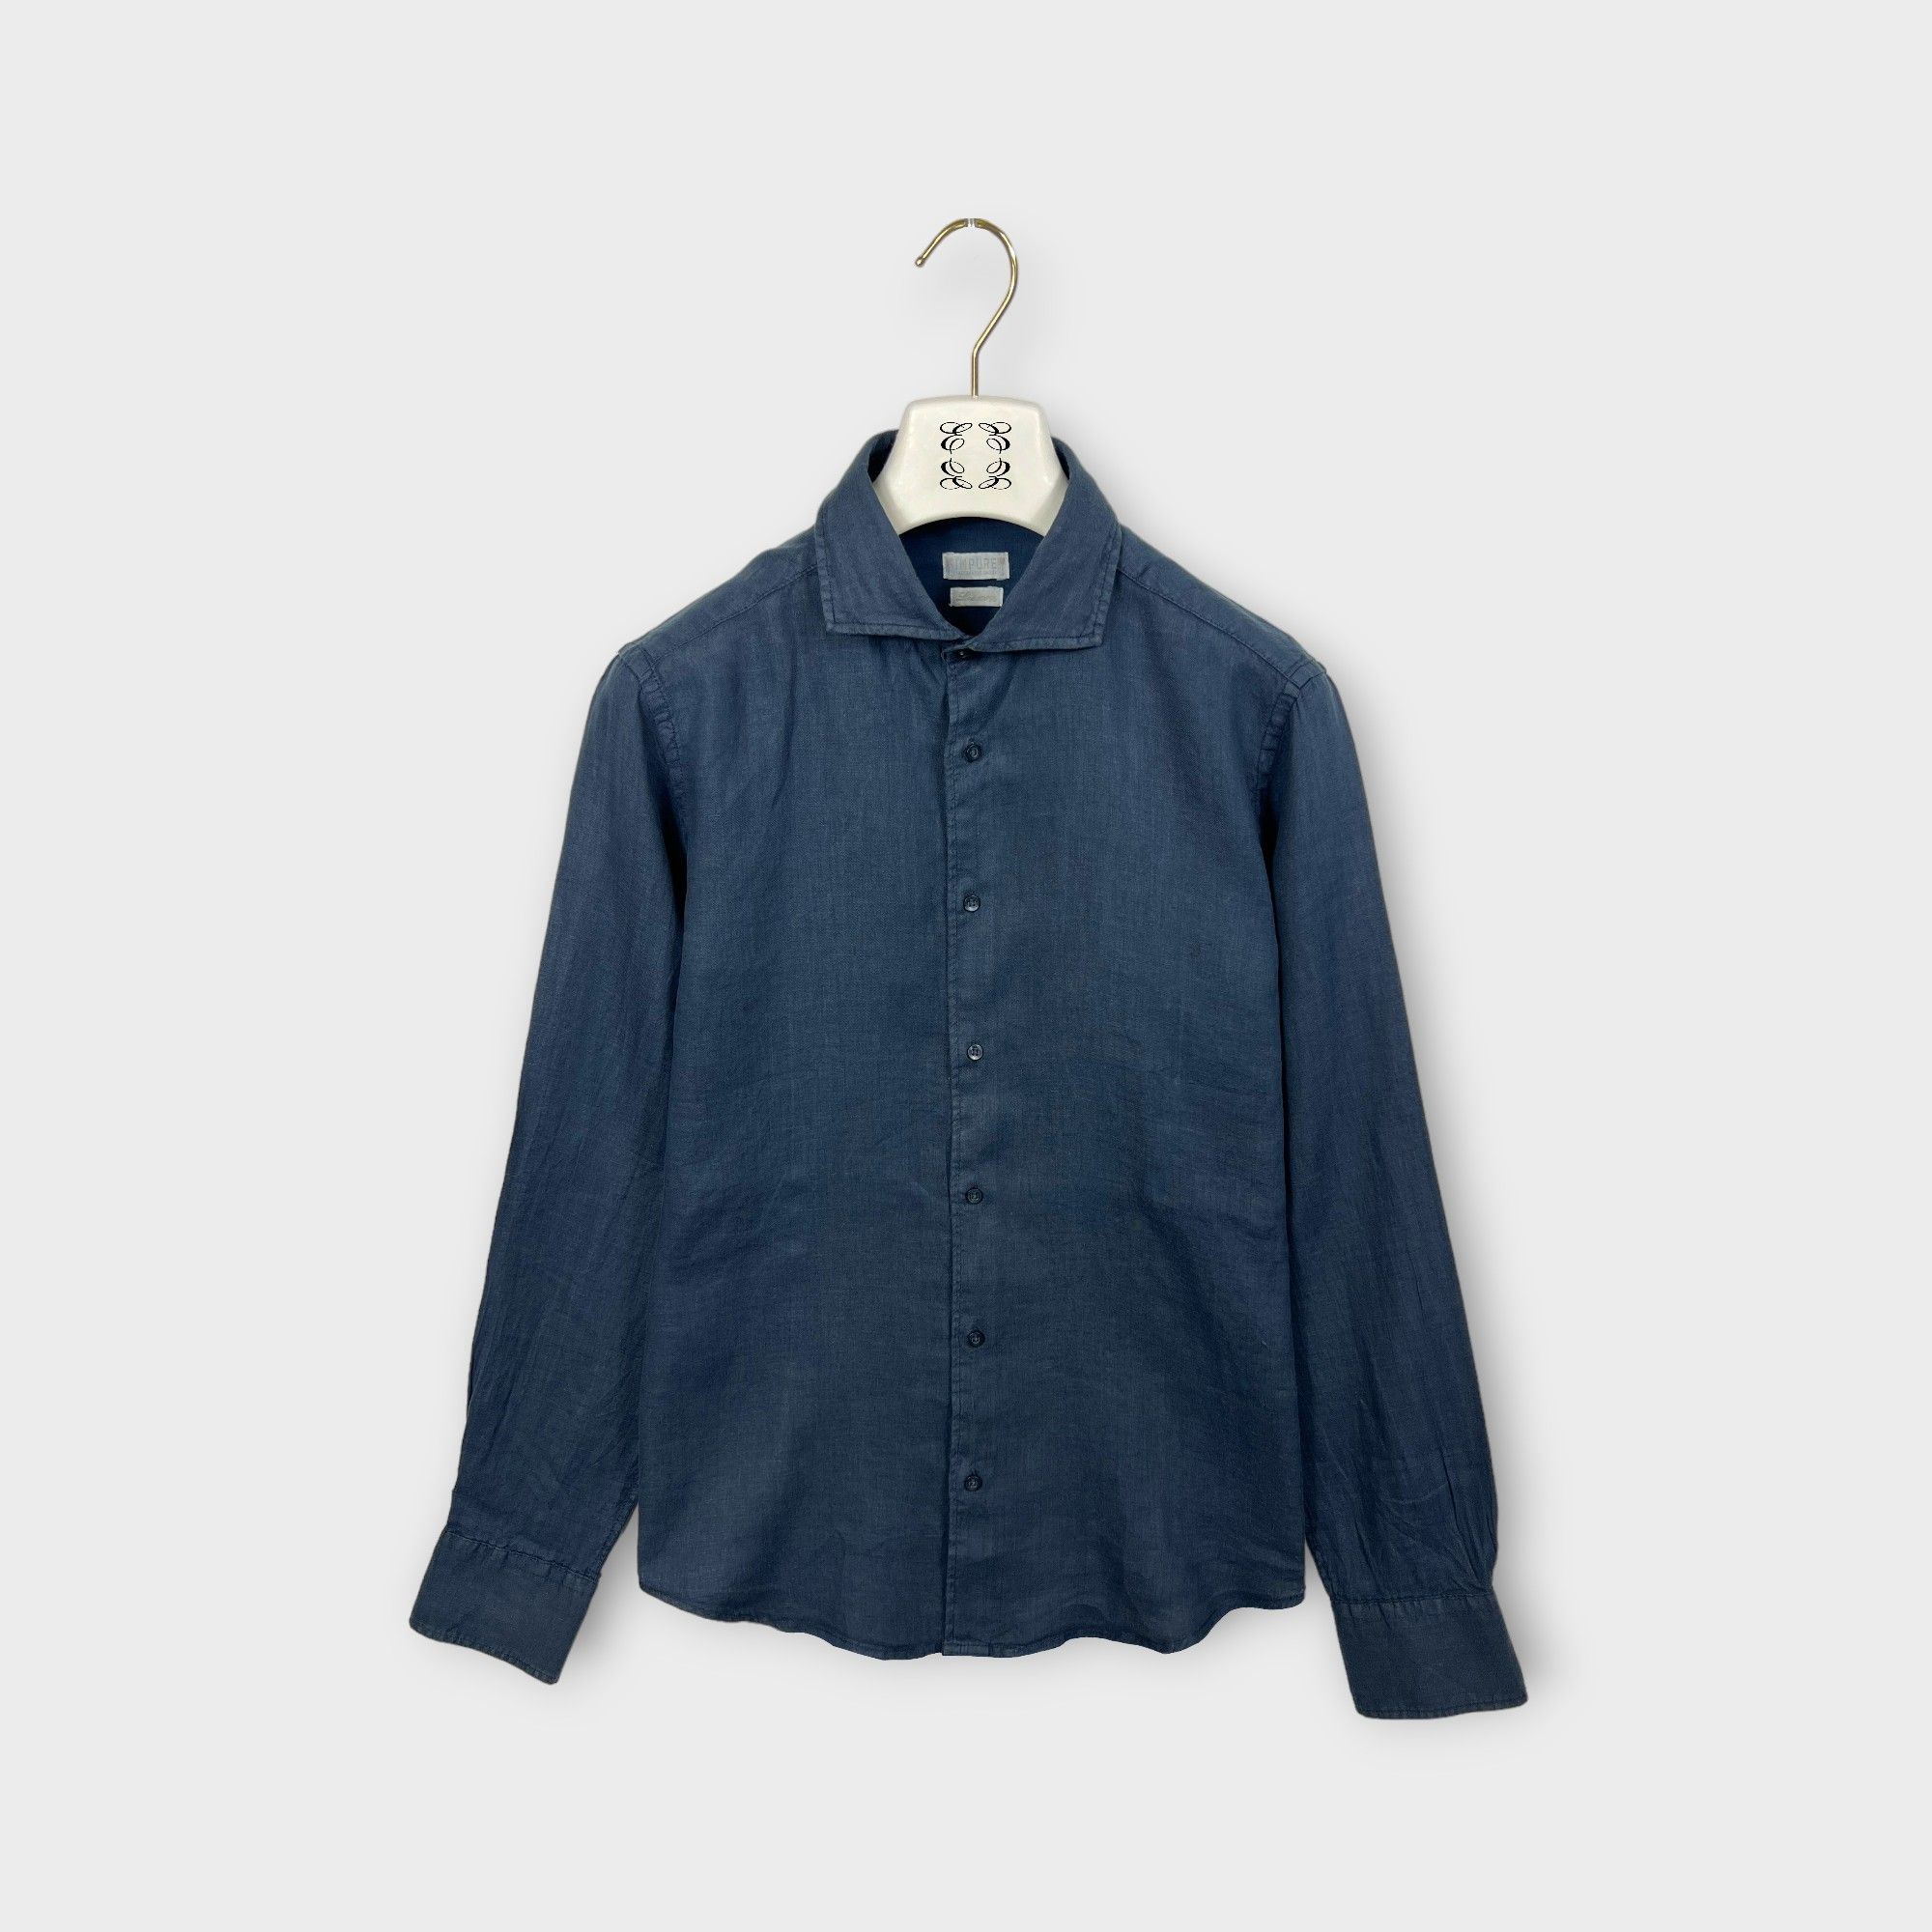 images/virtuemart/product/IMPURE EREDI PISCOPO Camicia in lino da uomo collo francese colore blu 2.jpg